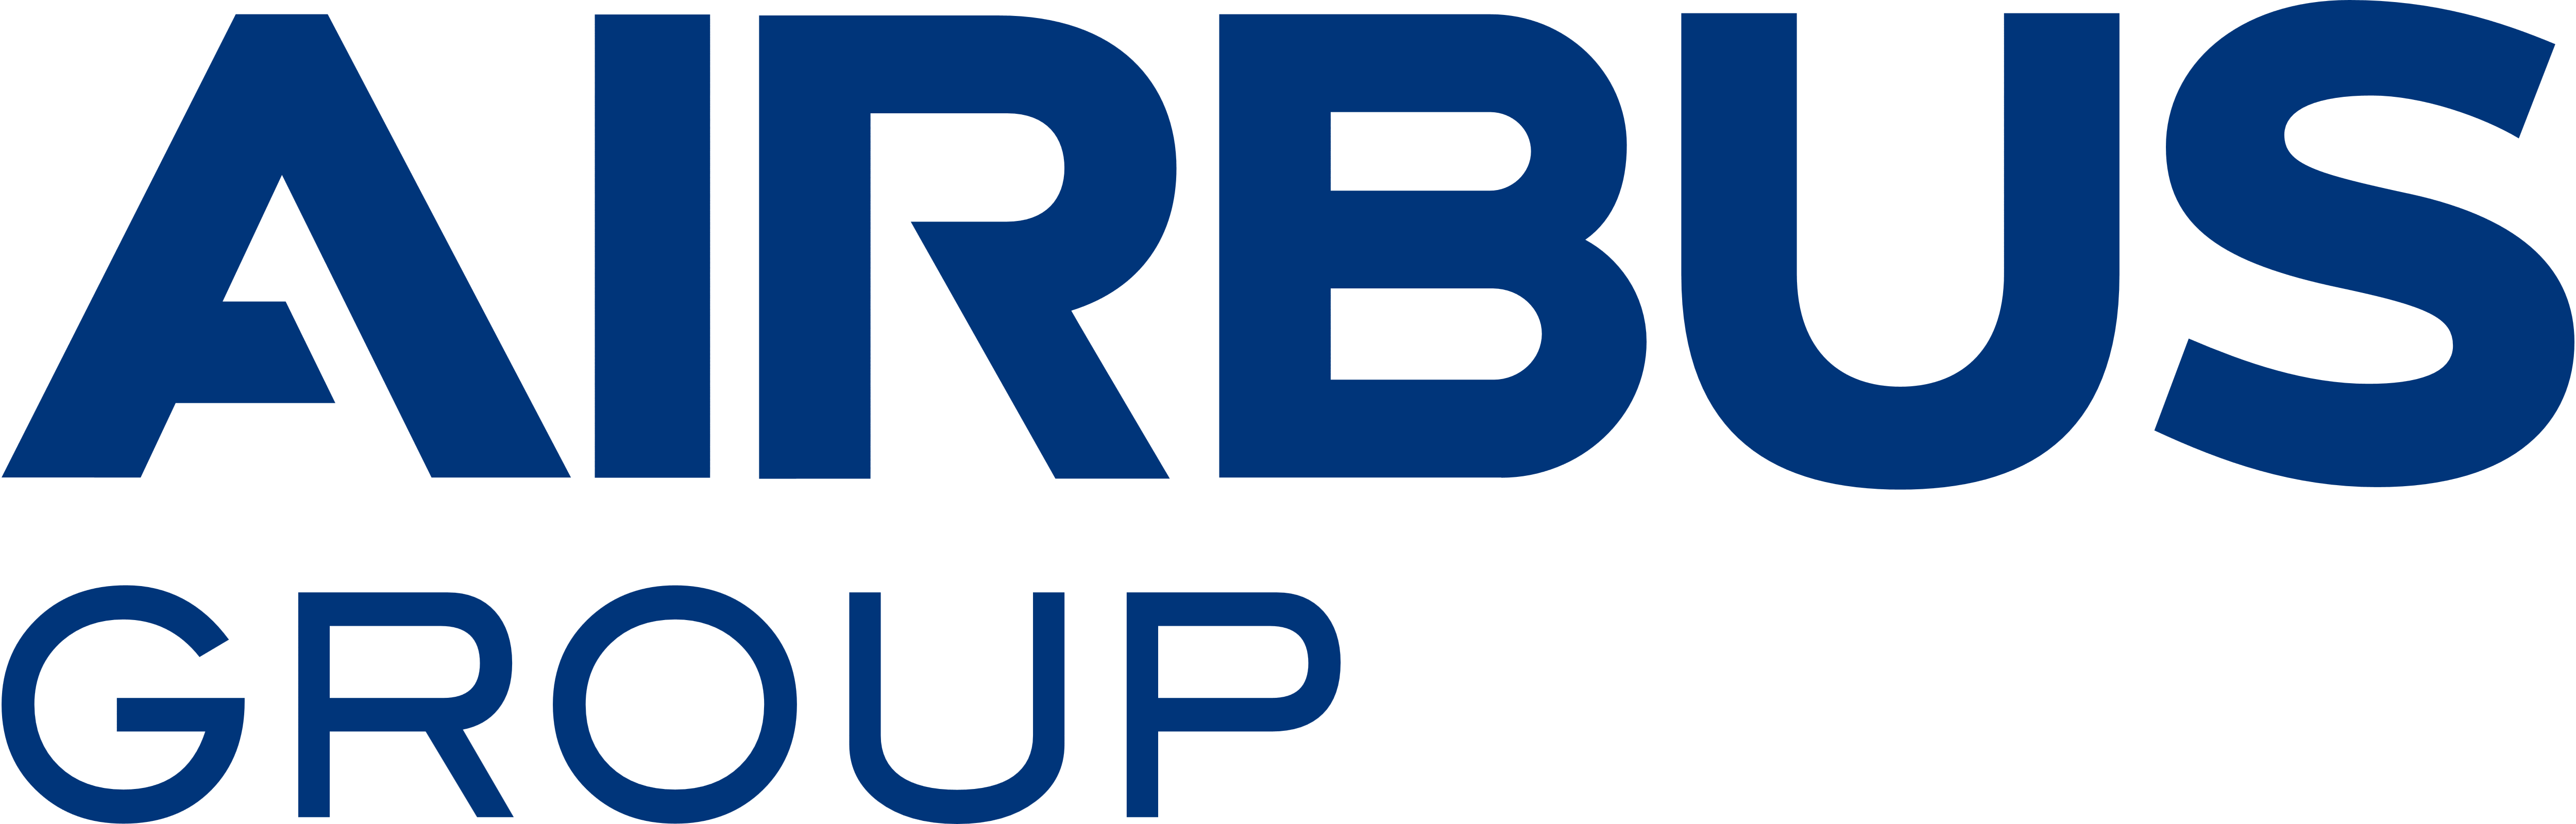 Airbus Logo PNG - 176646